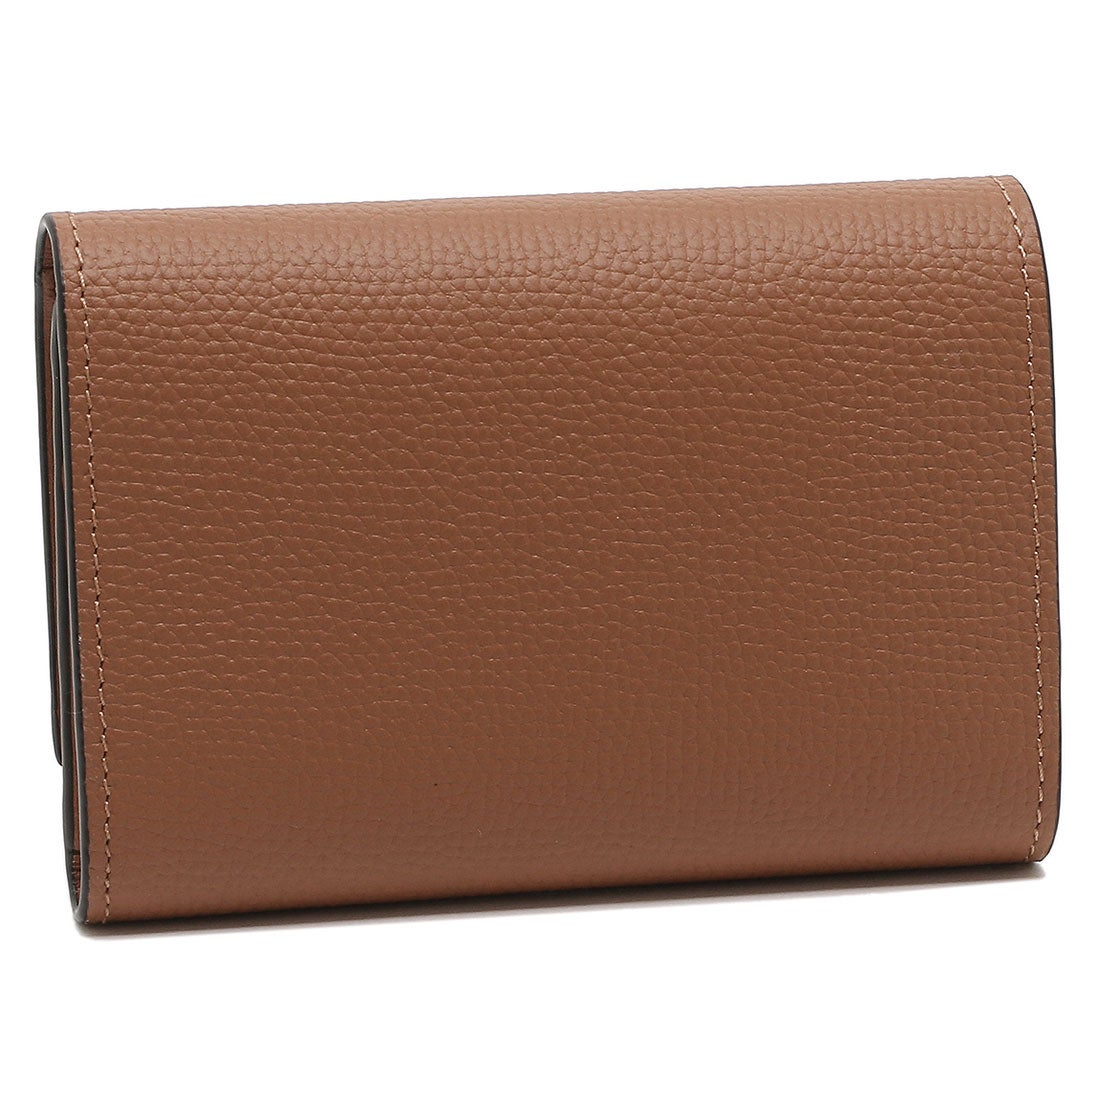 ロエベ 三つ折り財布ファッション小物 - 財布